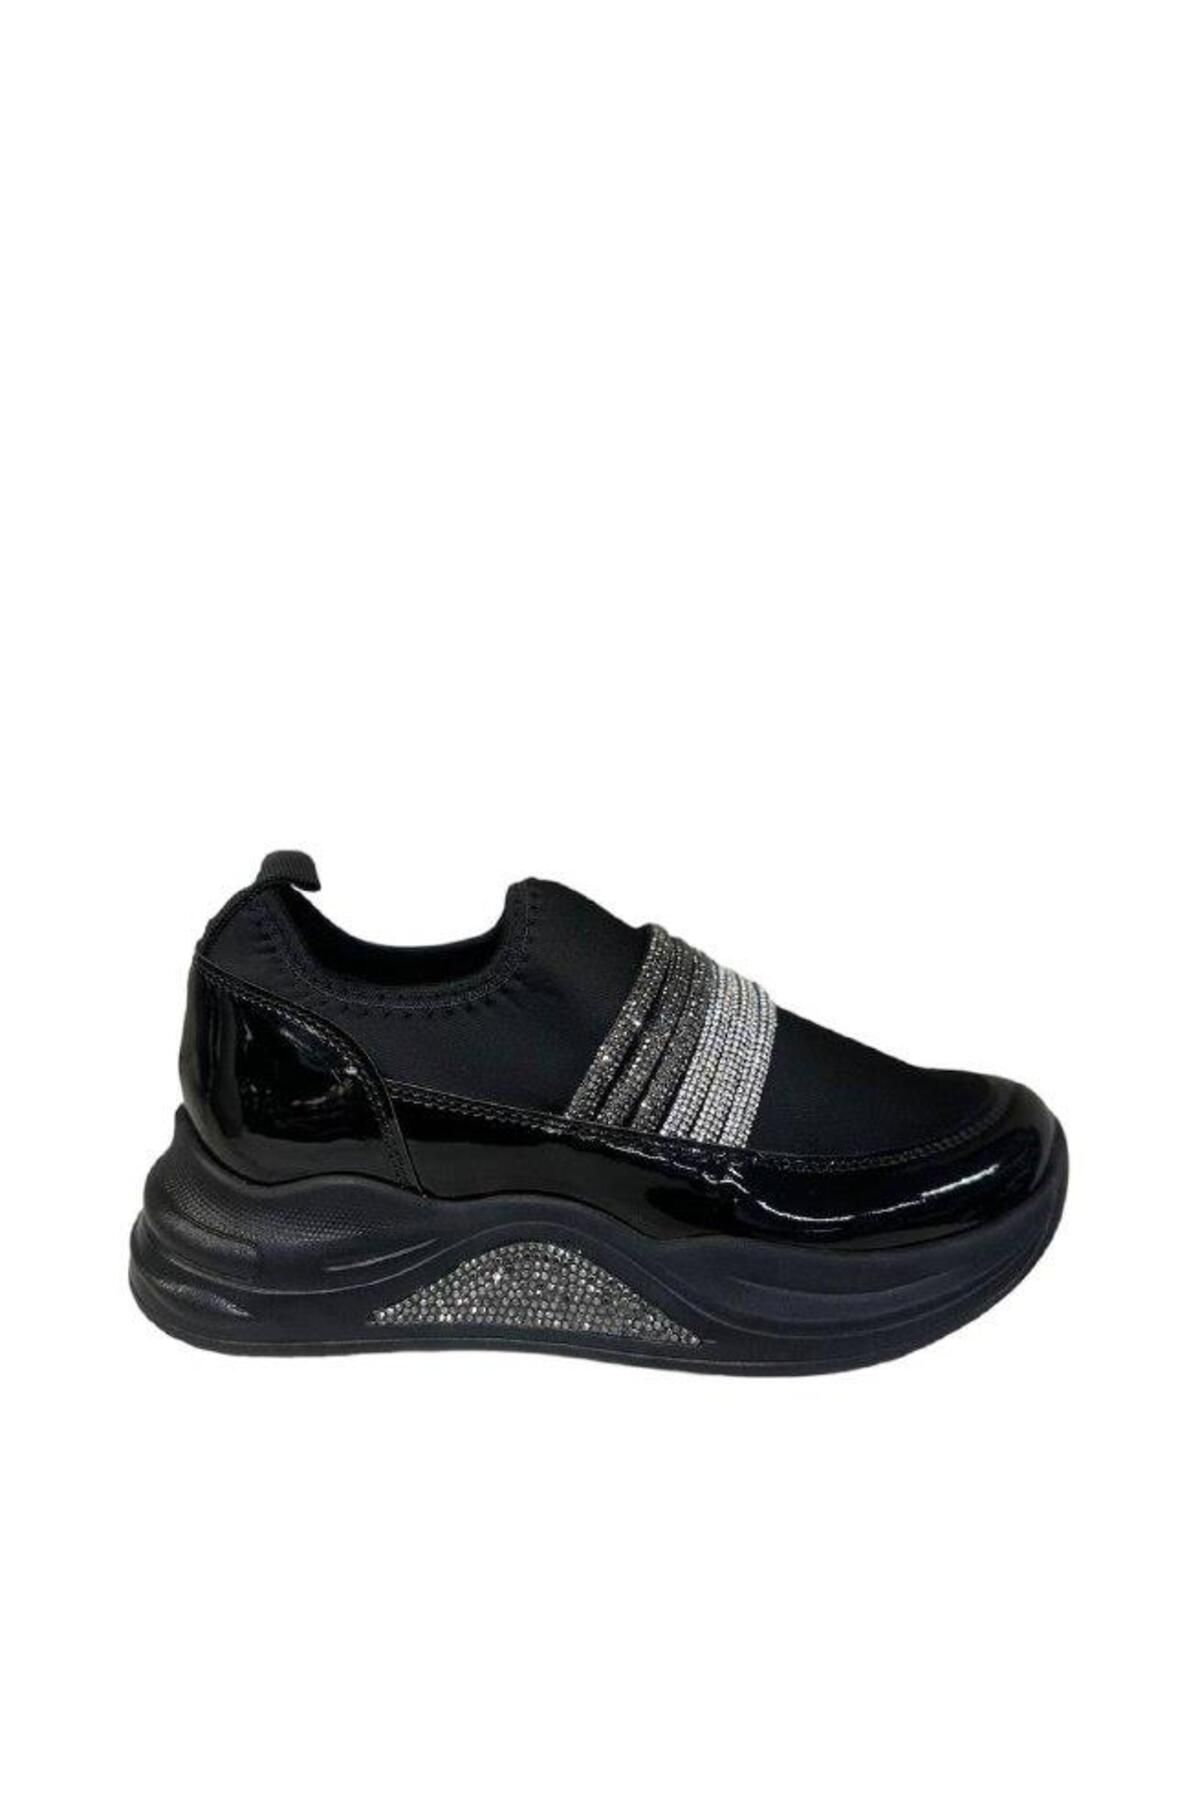 PUNTO 553118 Streç Esnek Kumaş Taş Detaylı Yüksek hafif Taban Kadın Günlük Sneakers Ayakkabı